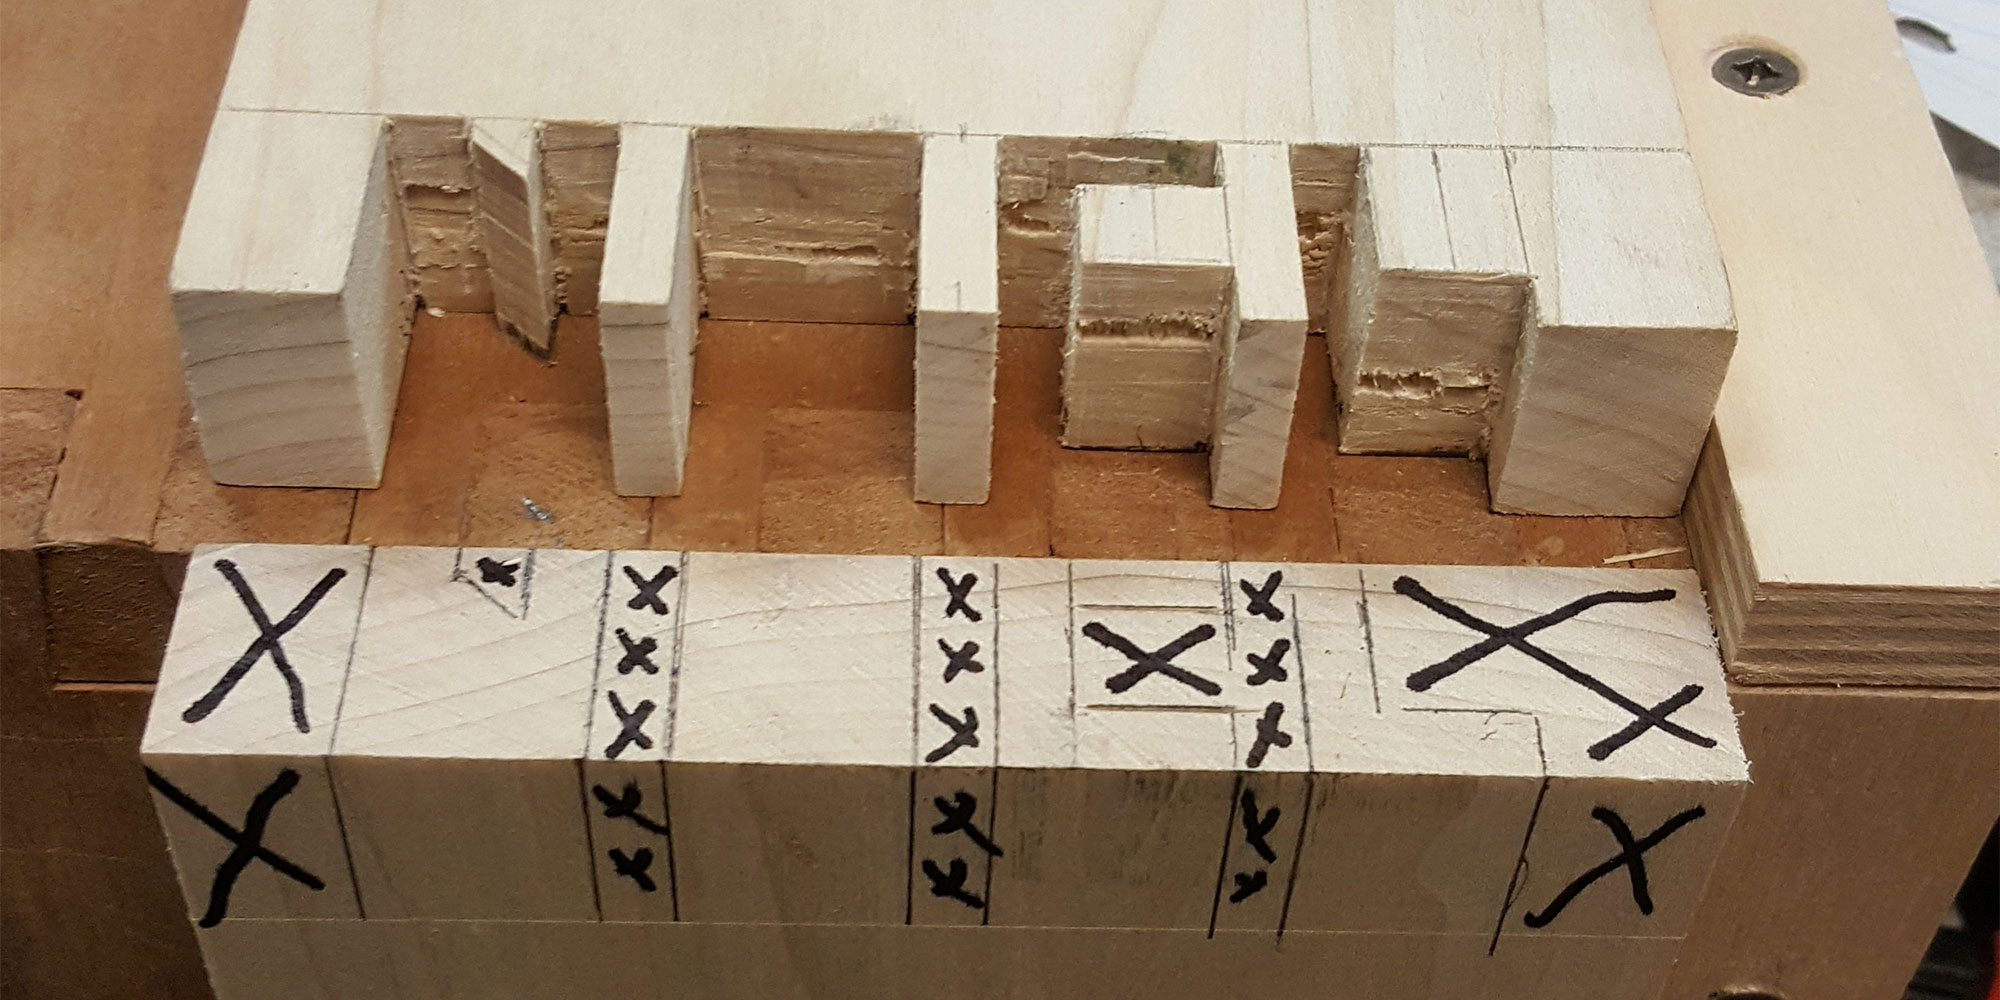 Planche maintenue par un serre-joint avec des portions marquées au feutre devant une planche présentant des lettres découpées